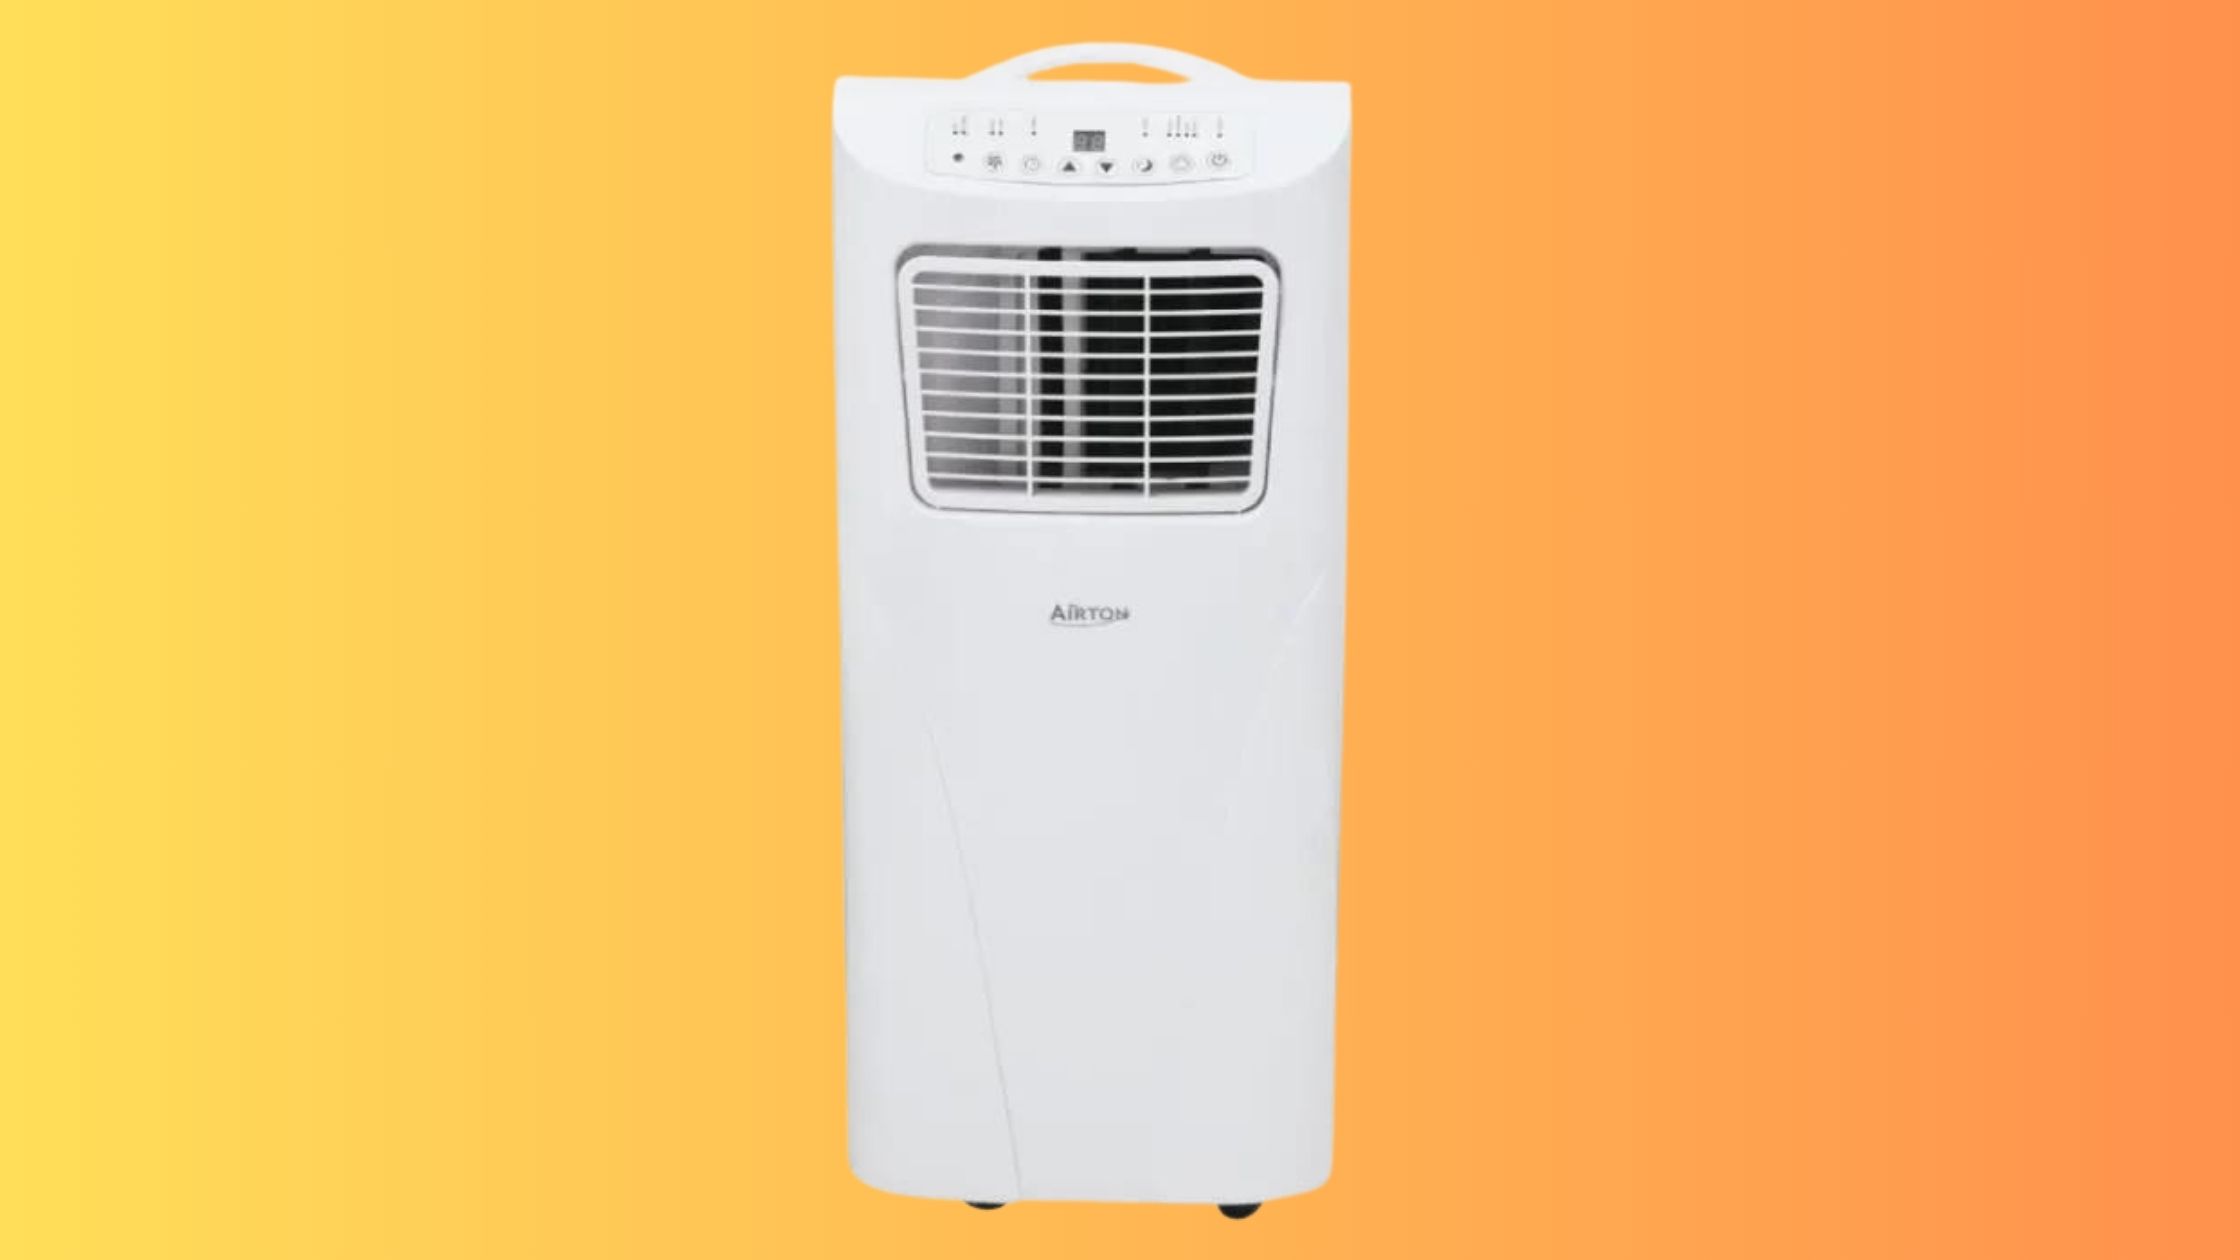 Le climatiseur mobile et réversible Airton est en promotion durant les soldes d'été, une aubaine pour résister face à la chaleur © Cdiscount